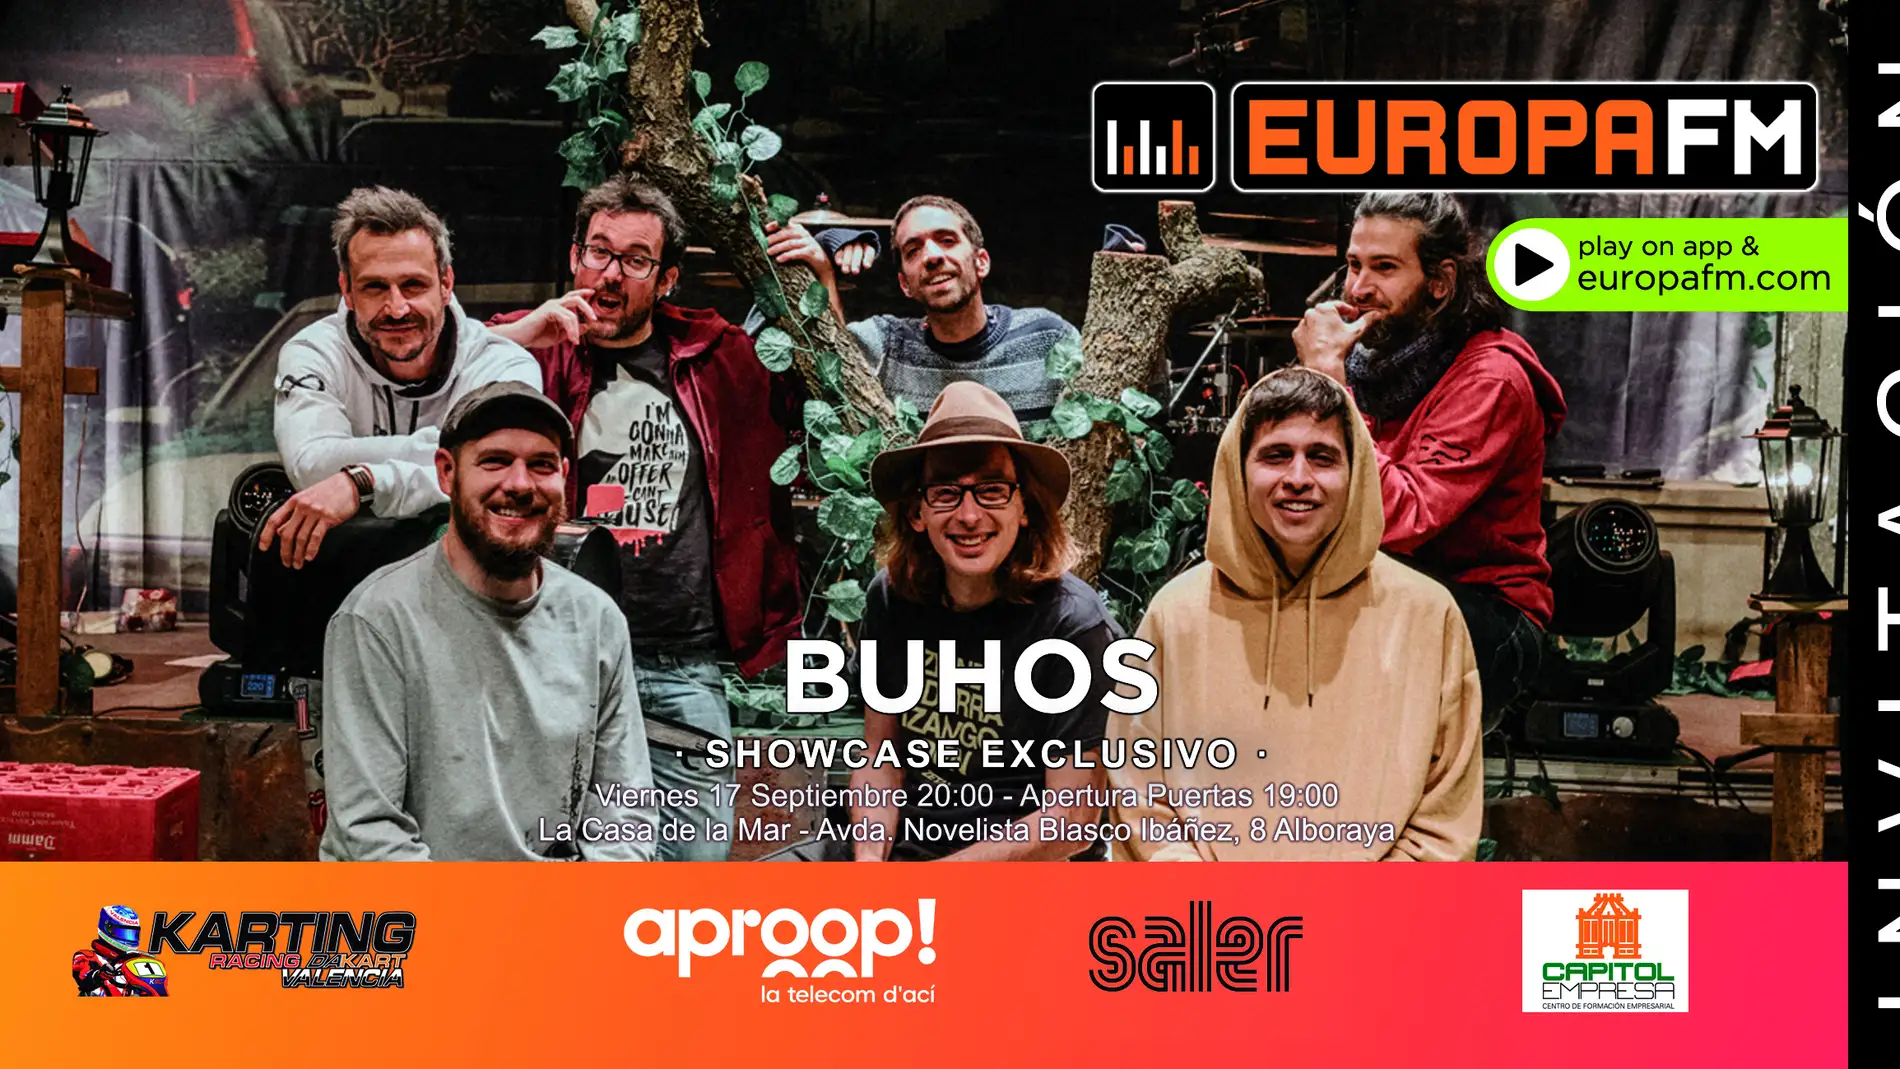 ¿Quieres asistir al showcase exclusivo de Buhos el 17 de septiembre en la Casa de la Mar de Alboraya? ¡Toma nota!